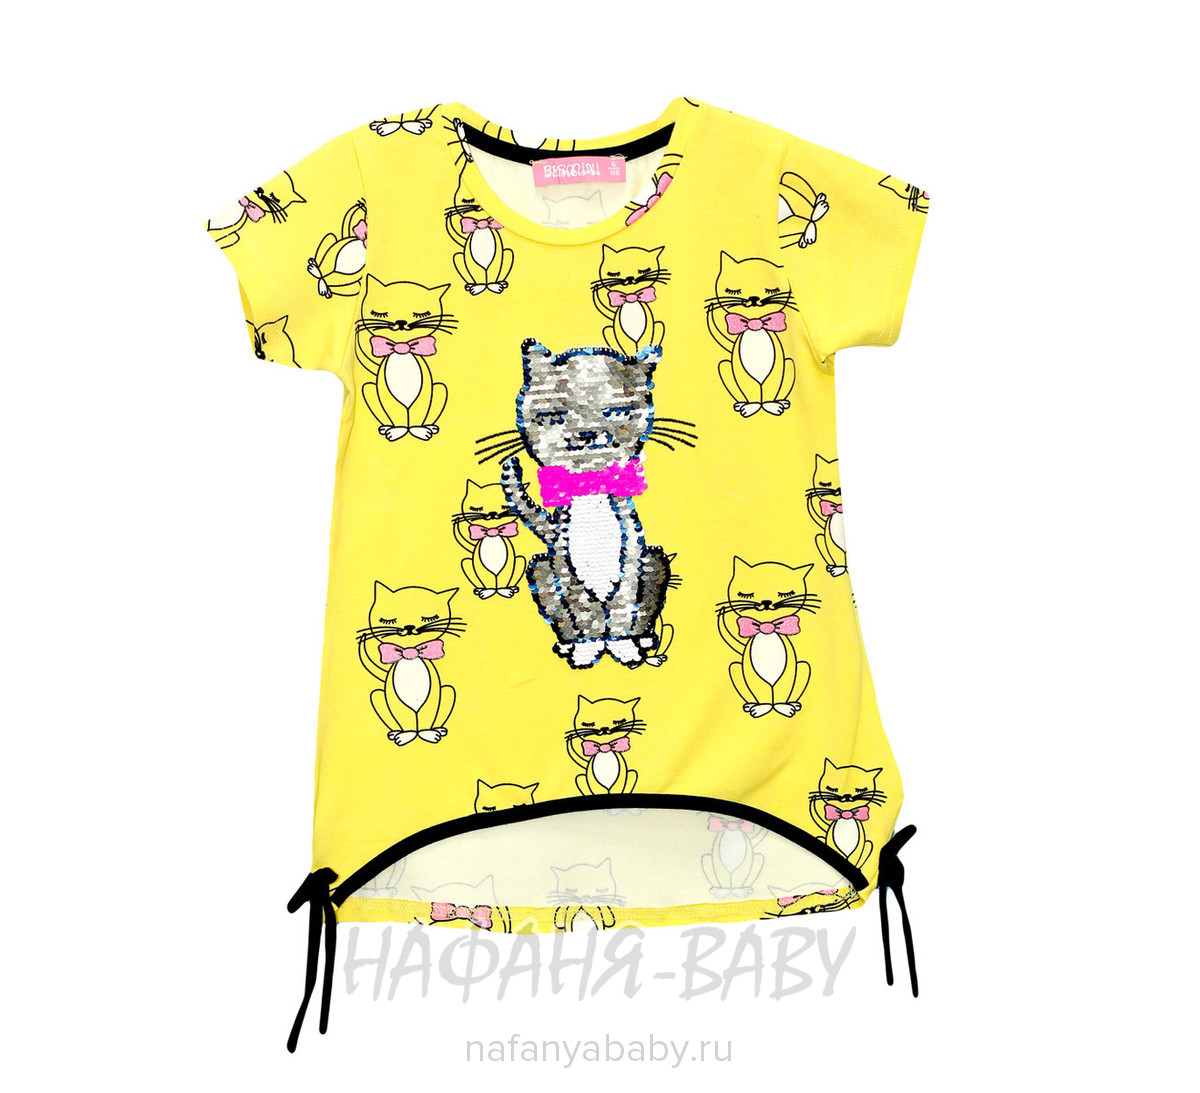 Детская футболка BERMINI арт: 6400, 1-4 года, 5-9 лет, цвет желтый, оптом Турция